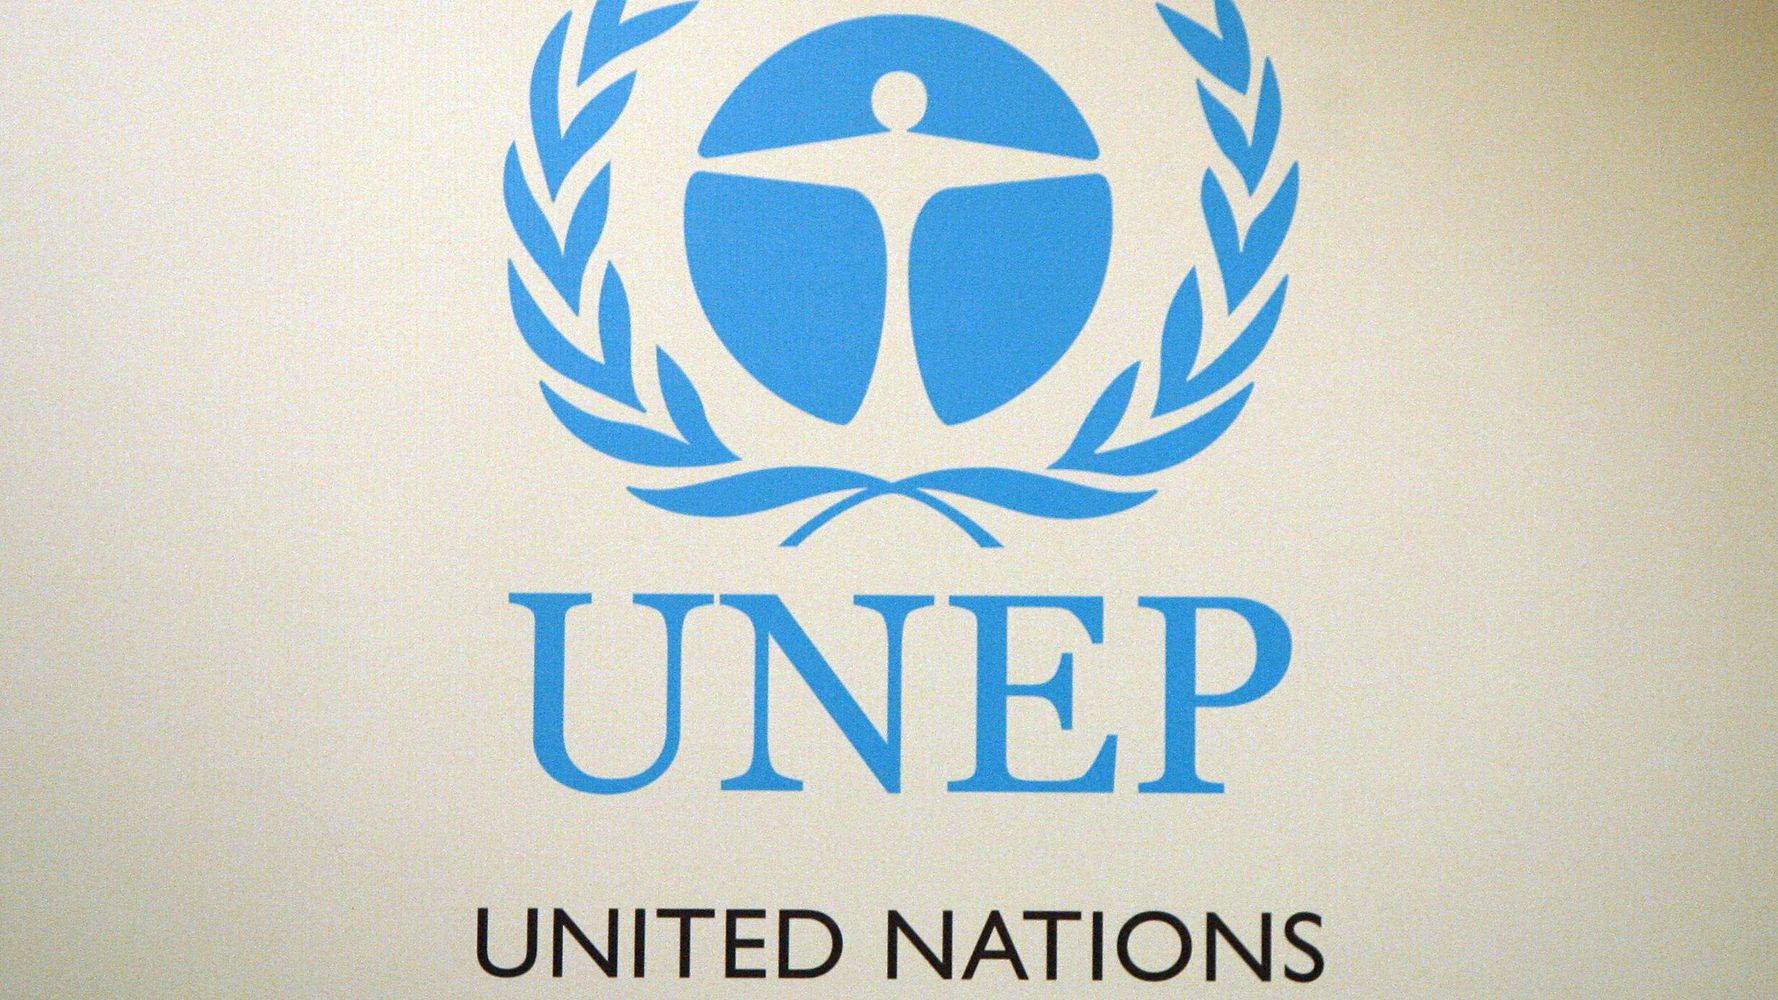 Юнеп оон. UNEP (ЮНЕП). United Nations environment programme (UNEP). Программа ООН по окружающей среде логотип. ЮНЕП логотип.